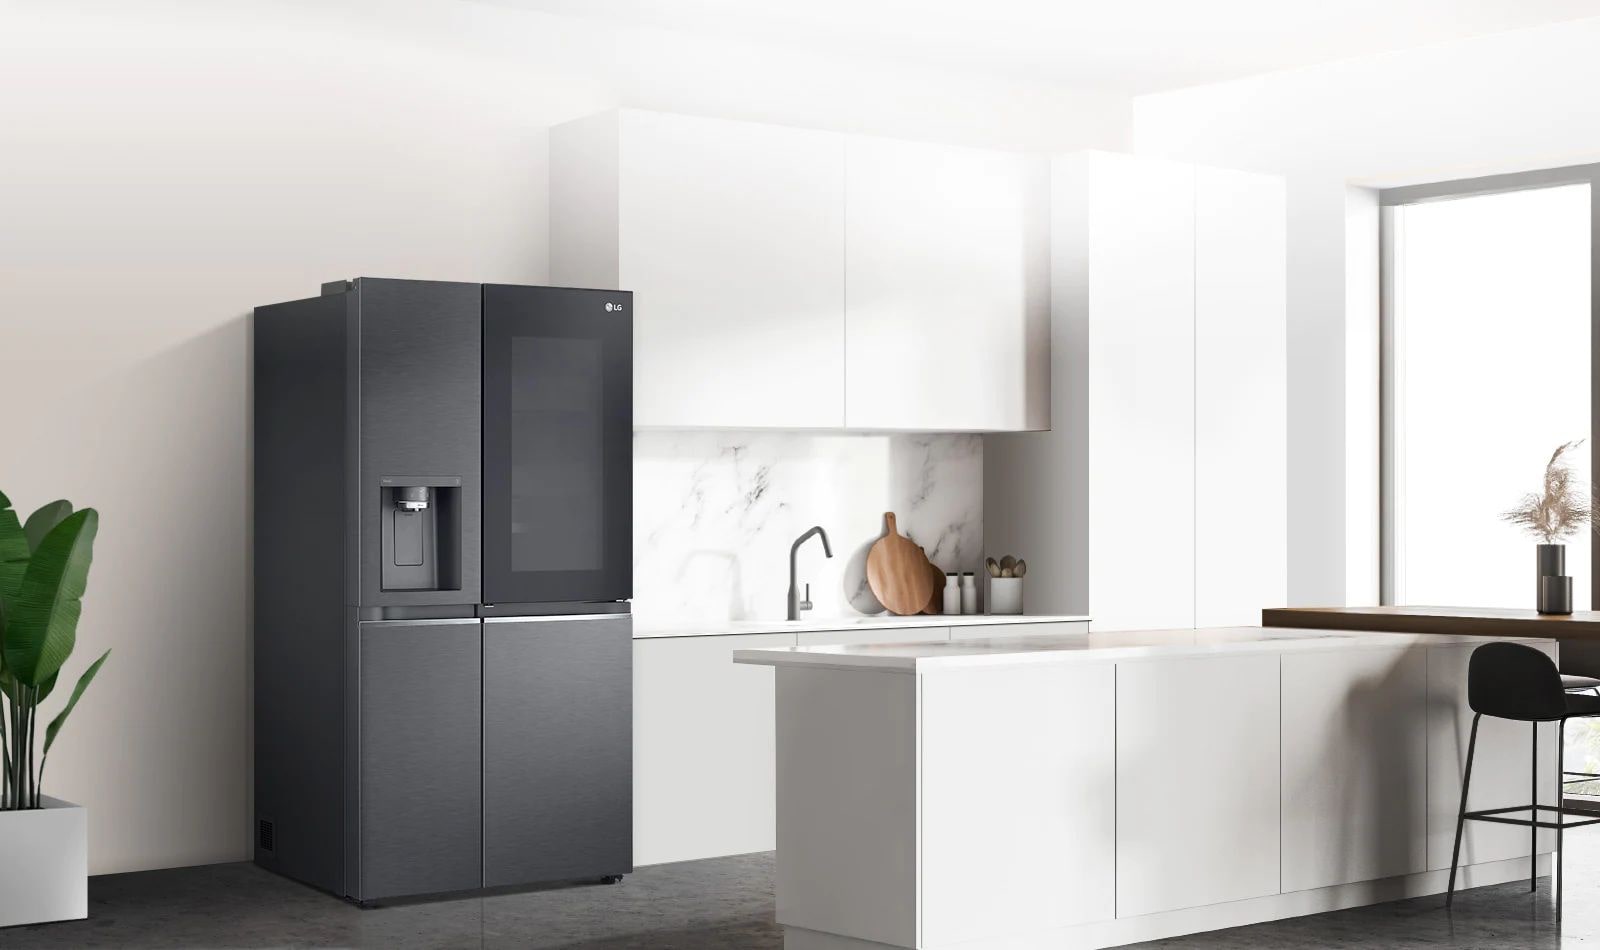 Seitenansicht einer Küche mit eingebautem schwarzen InstaView-Kühlschrank.